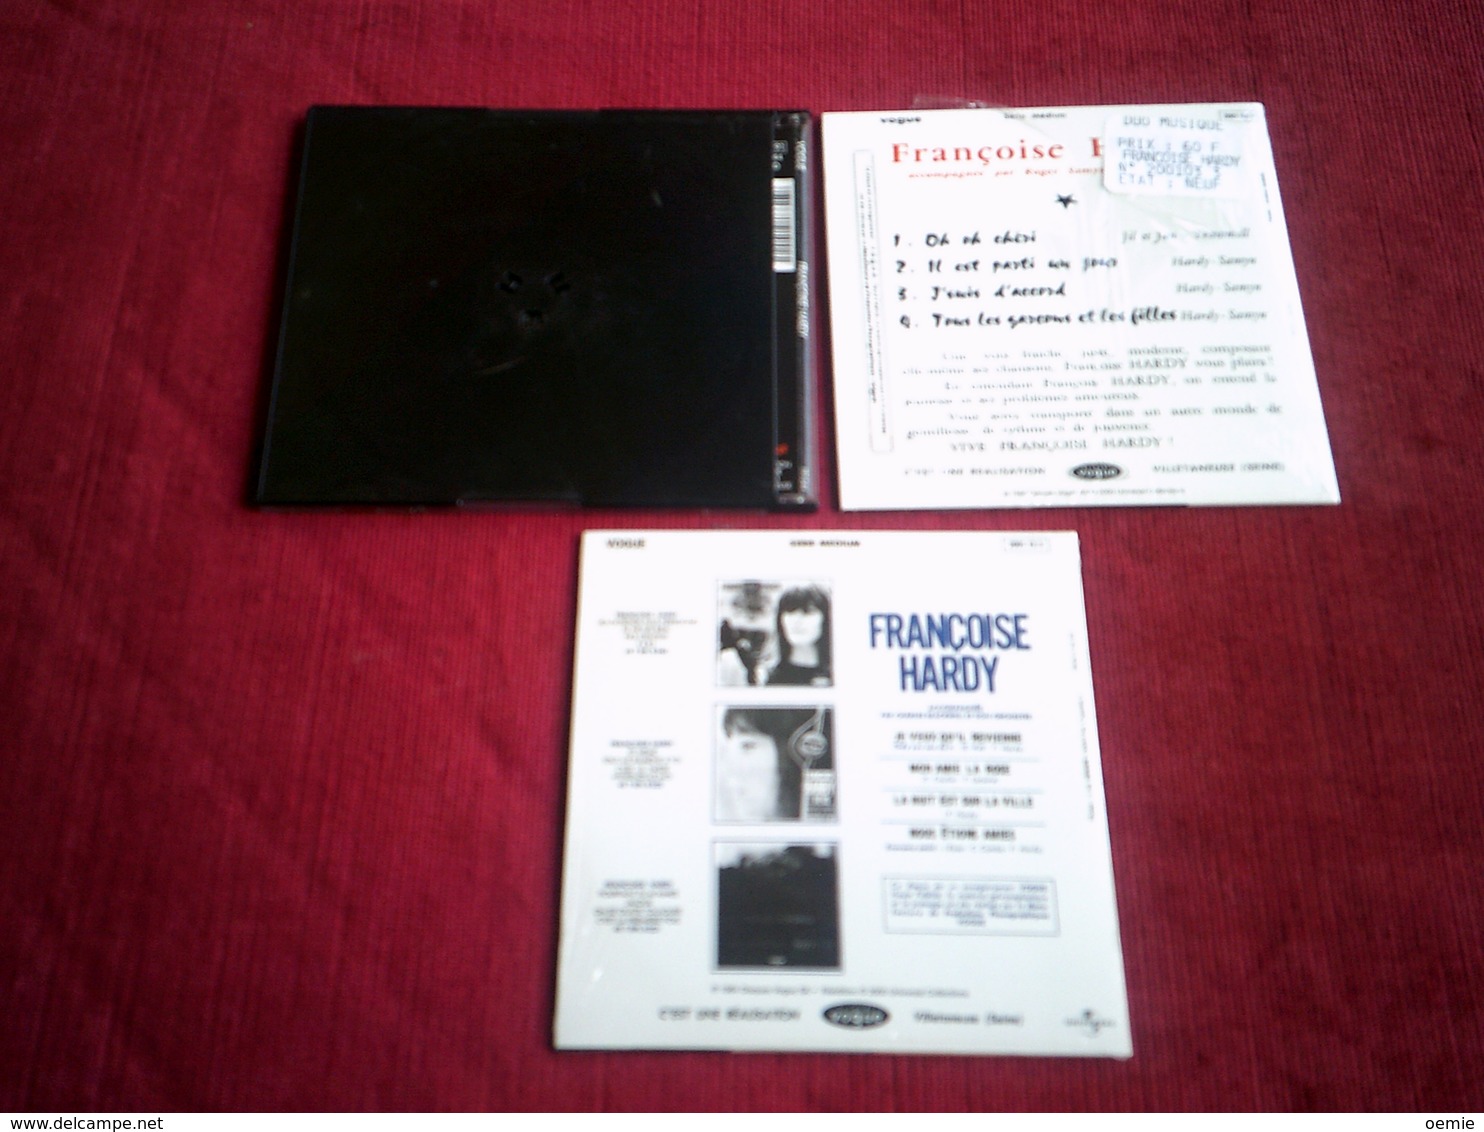 FRANCOISE HARDY  ° COLLECTOR CD  4 TITRES  ° LA MAISON OU J'AI GRANDI + 2 CD SINGLES 4 TITRES - Autres - Musique Française